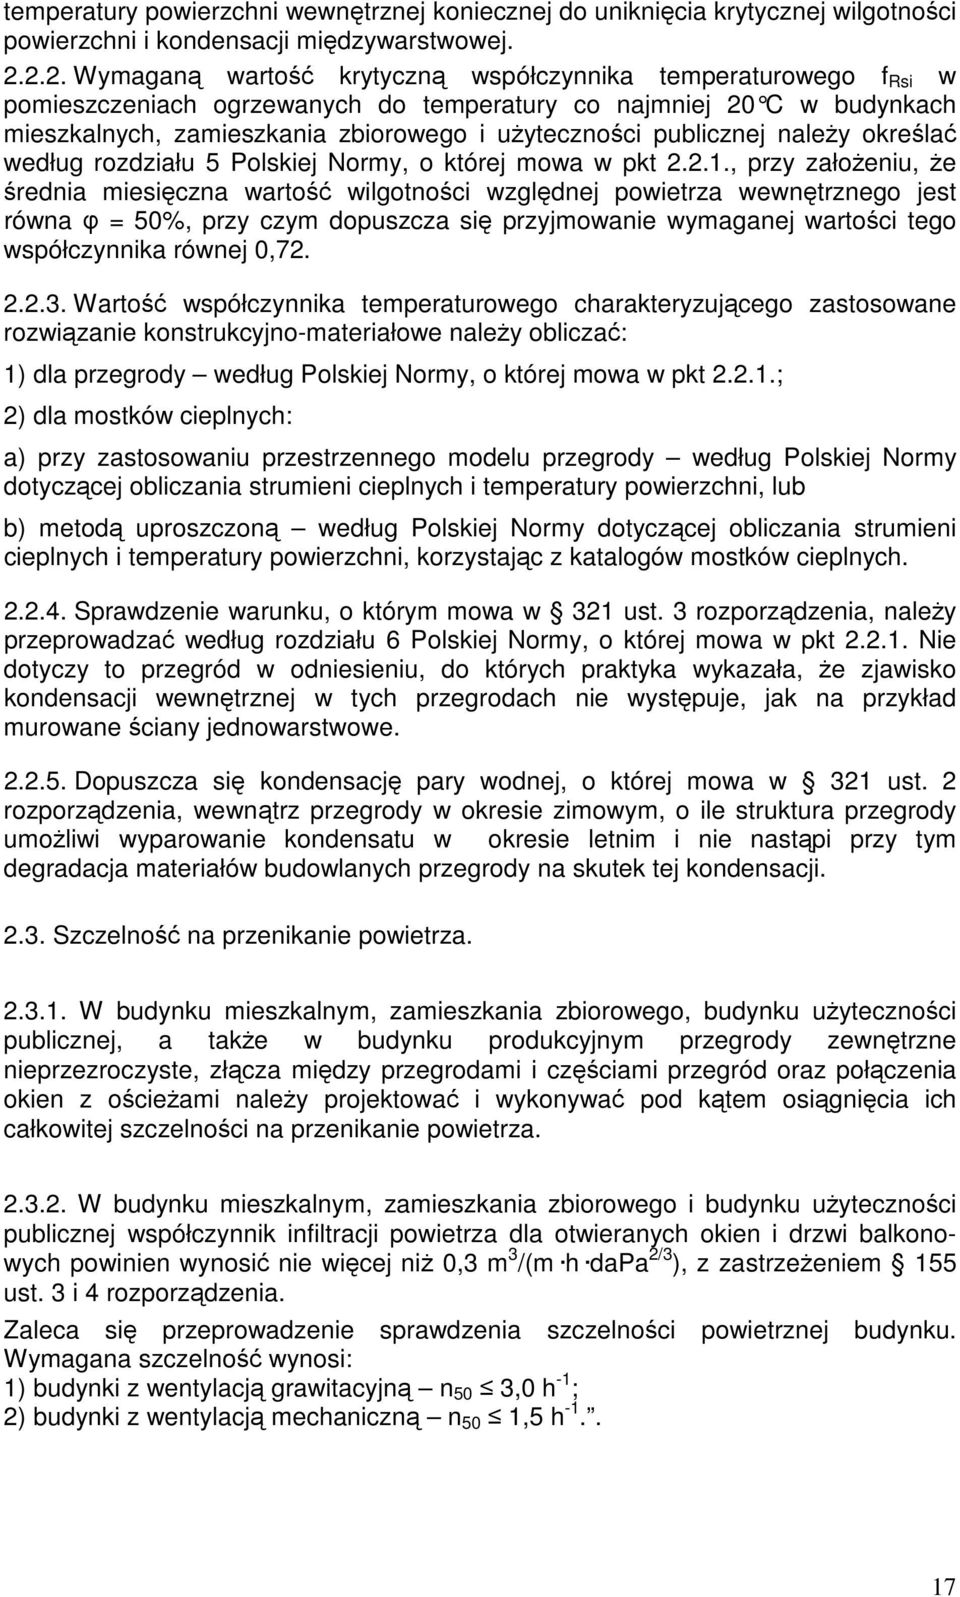 publicznej należy określać według rozdziału 5 Polskiej Normy, o której mowa w pkt 2.2.1.